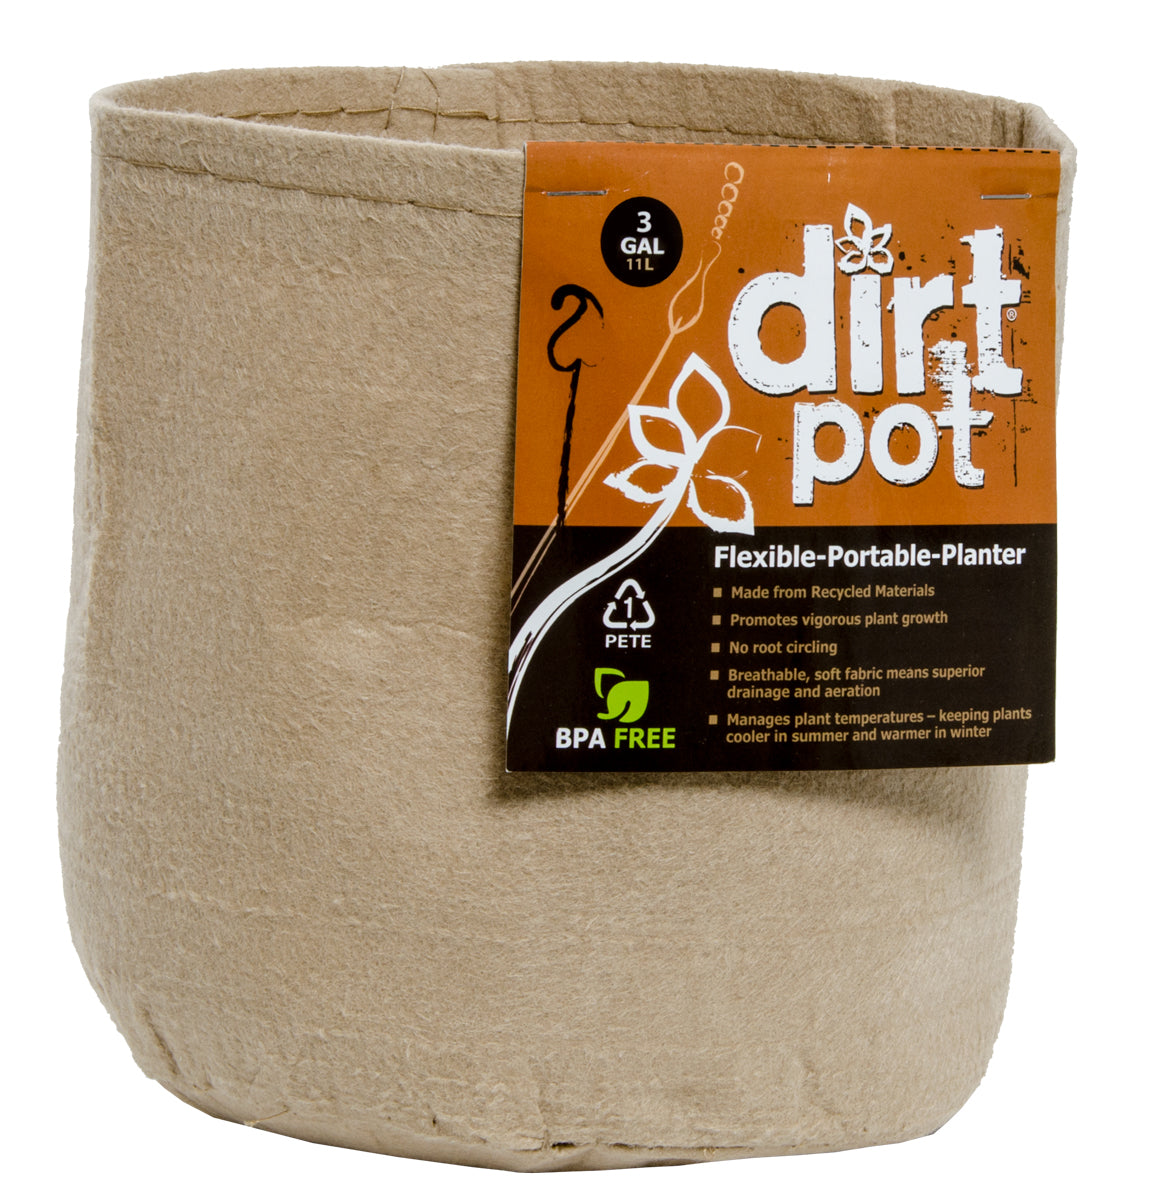 Dirt Pot Flexible Portable Planter, Tan, 3 gal, no handles